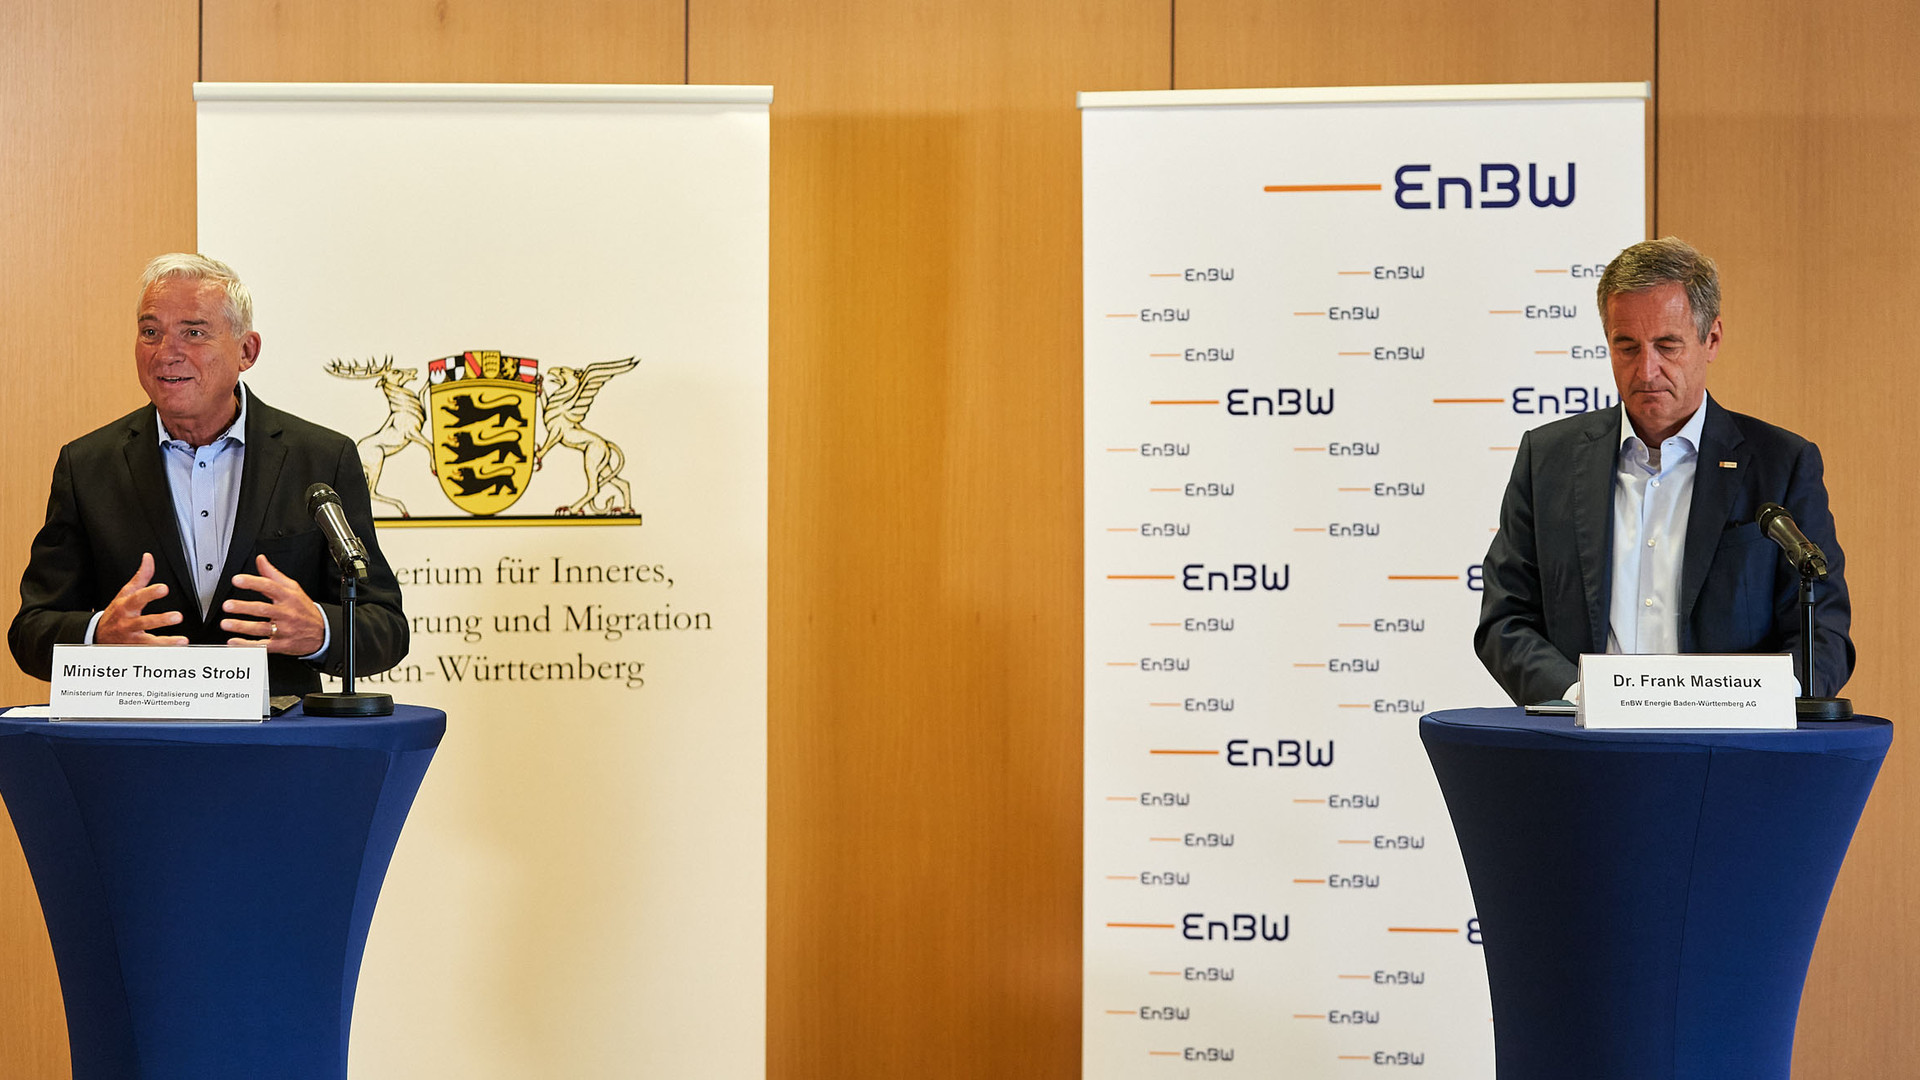 Innenminister Thomas Strobl und EnBW CEO Dr. Frank Mastiaux unterzeichnen Kooperationsvertrag für mehr Cybersicherheit von KRITIS.